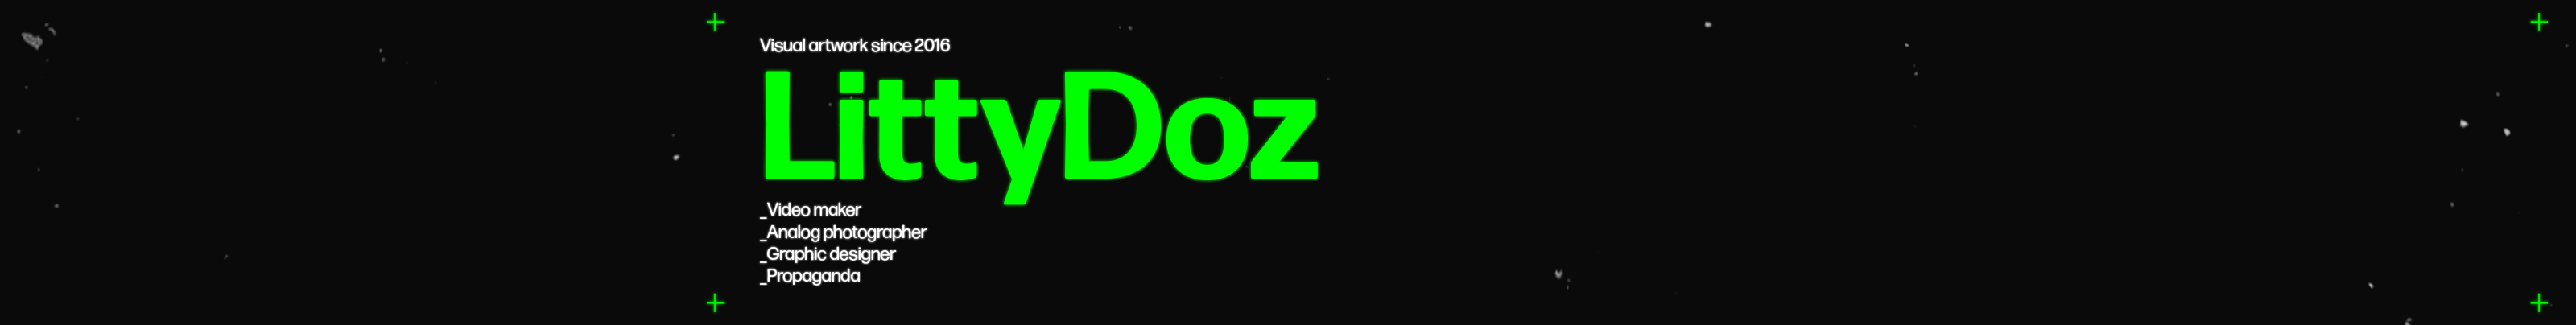 Litty Doz's profile banner